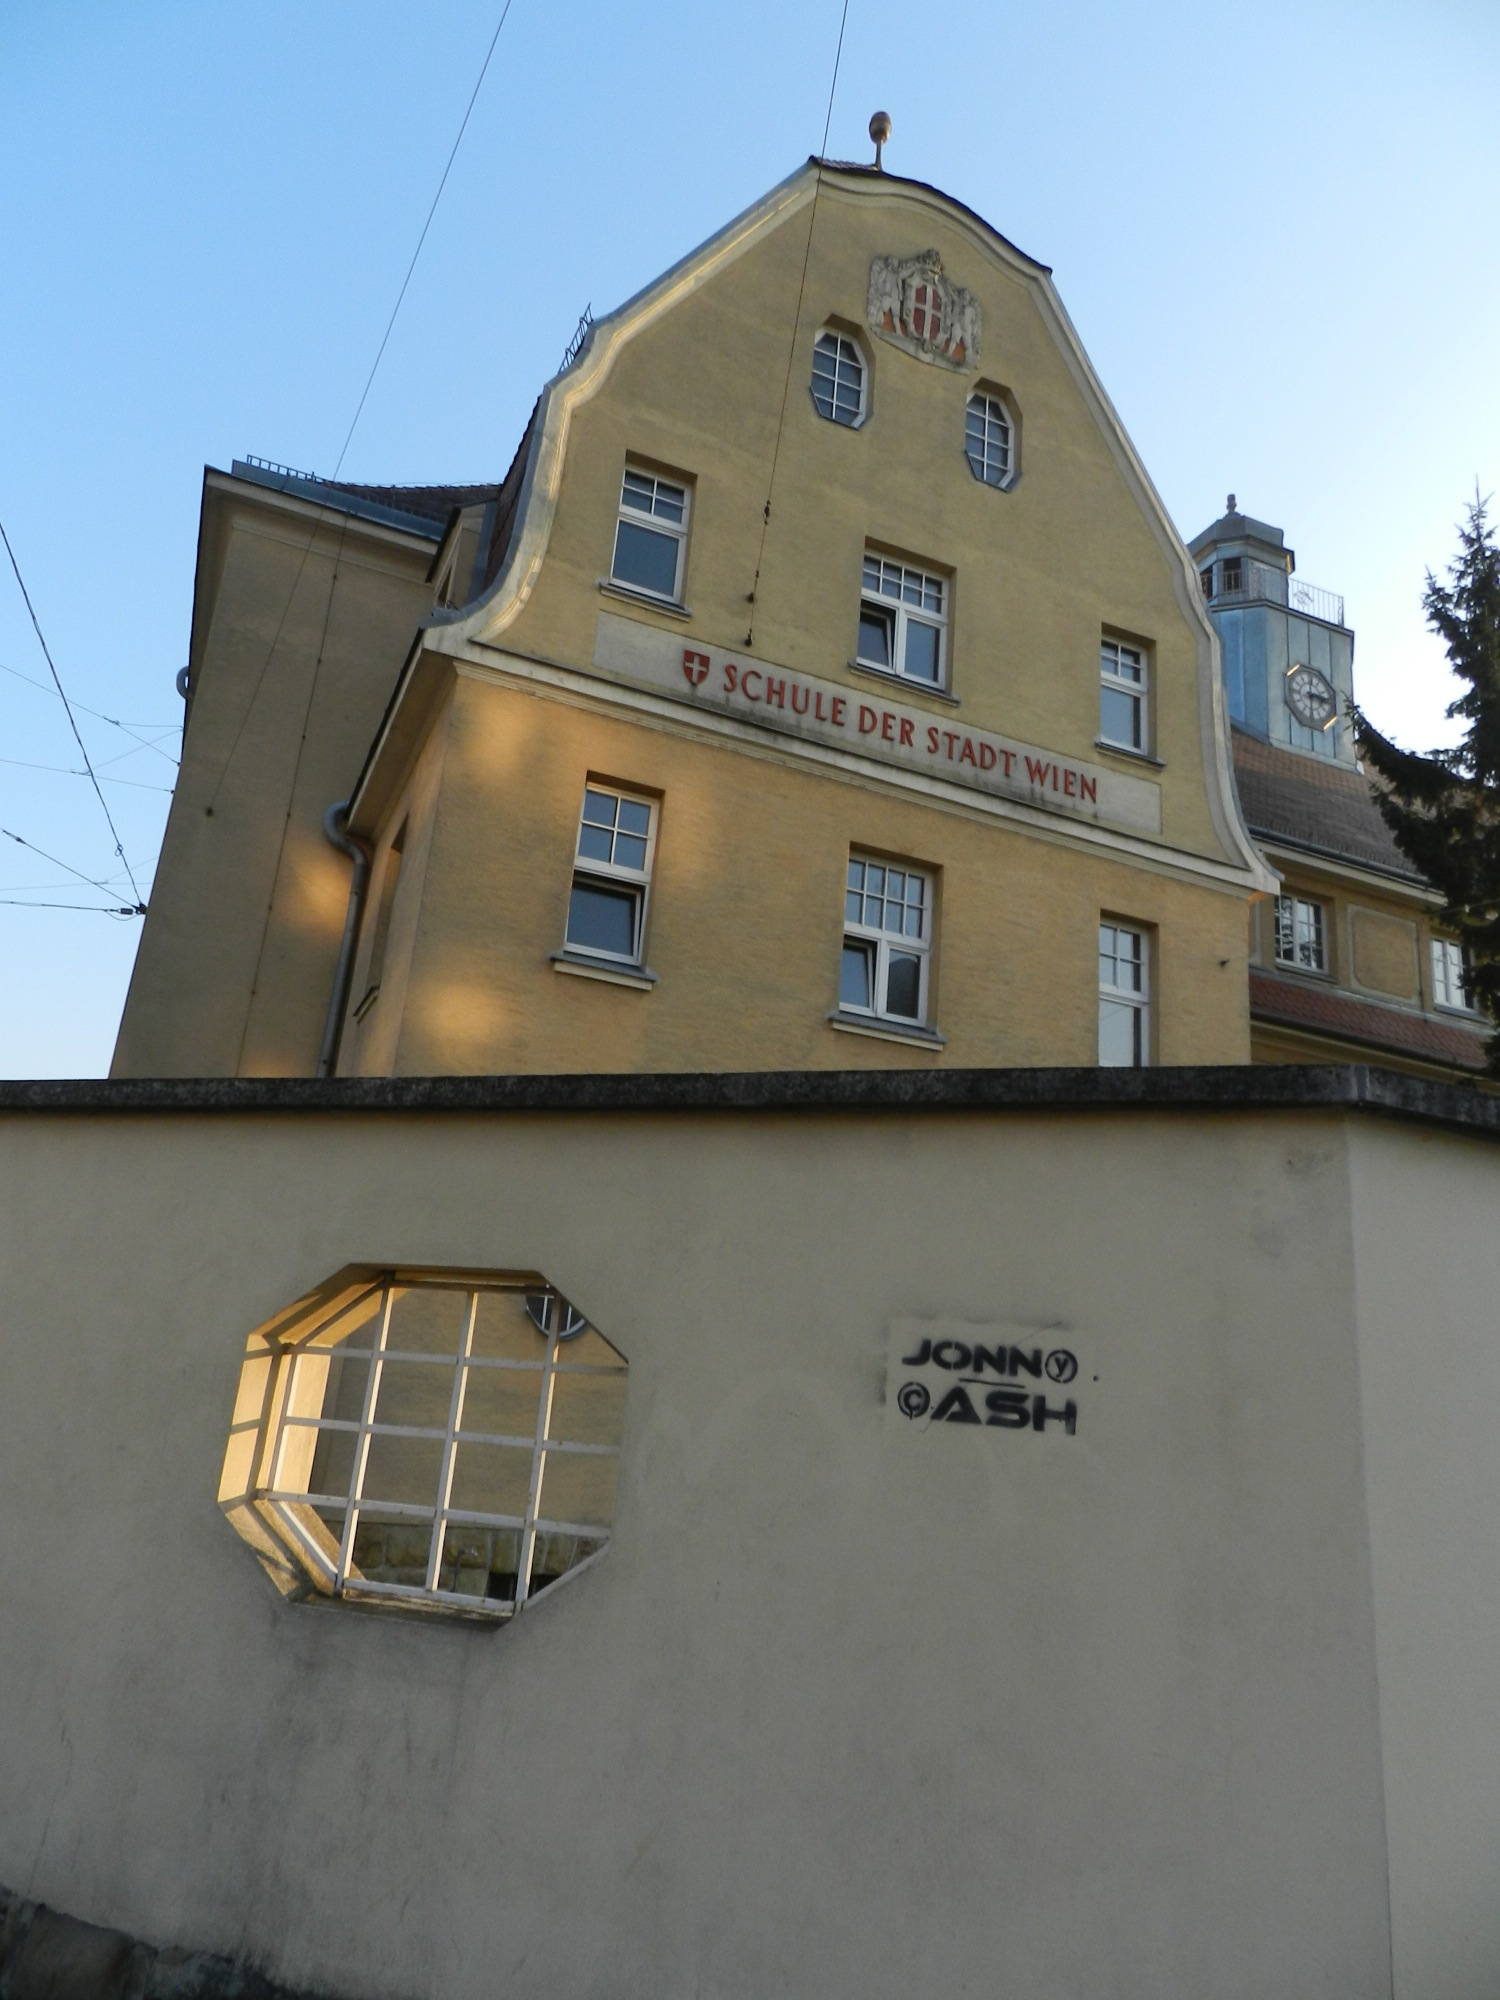 Schule der Stadt Wien mit interessantem Spraydetail